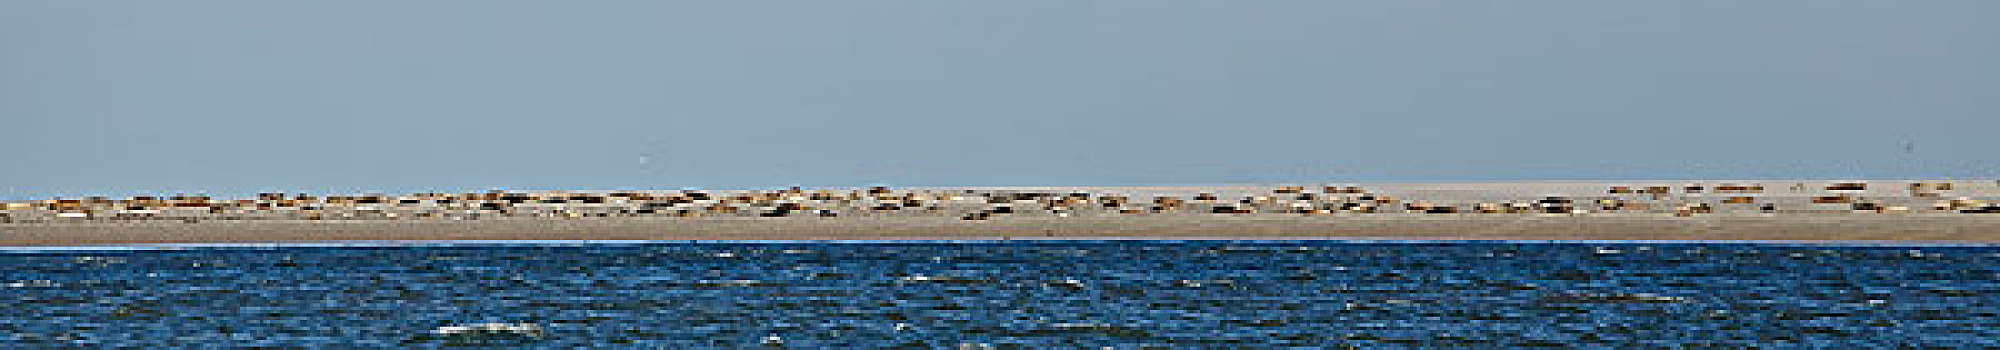 海豹,生物群,沙洲,靠近,岛屿,德国